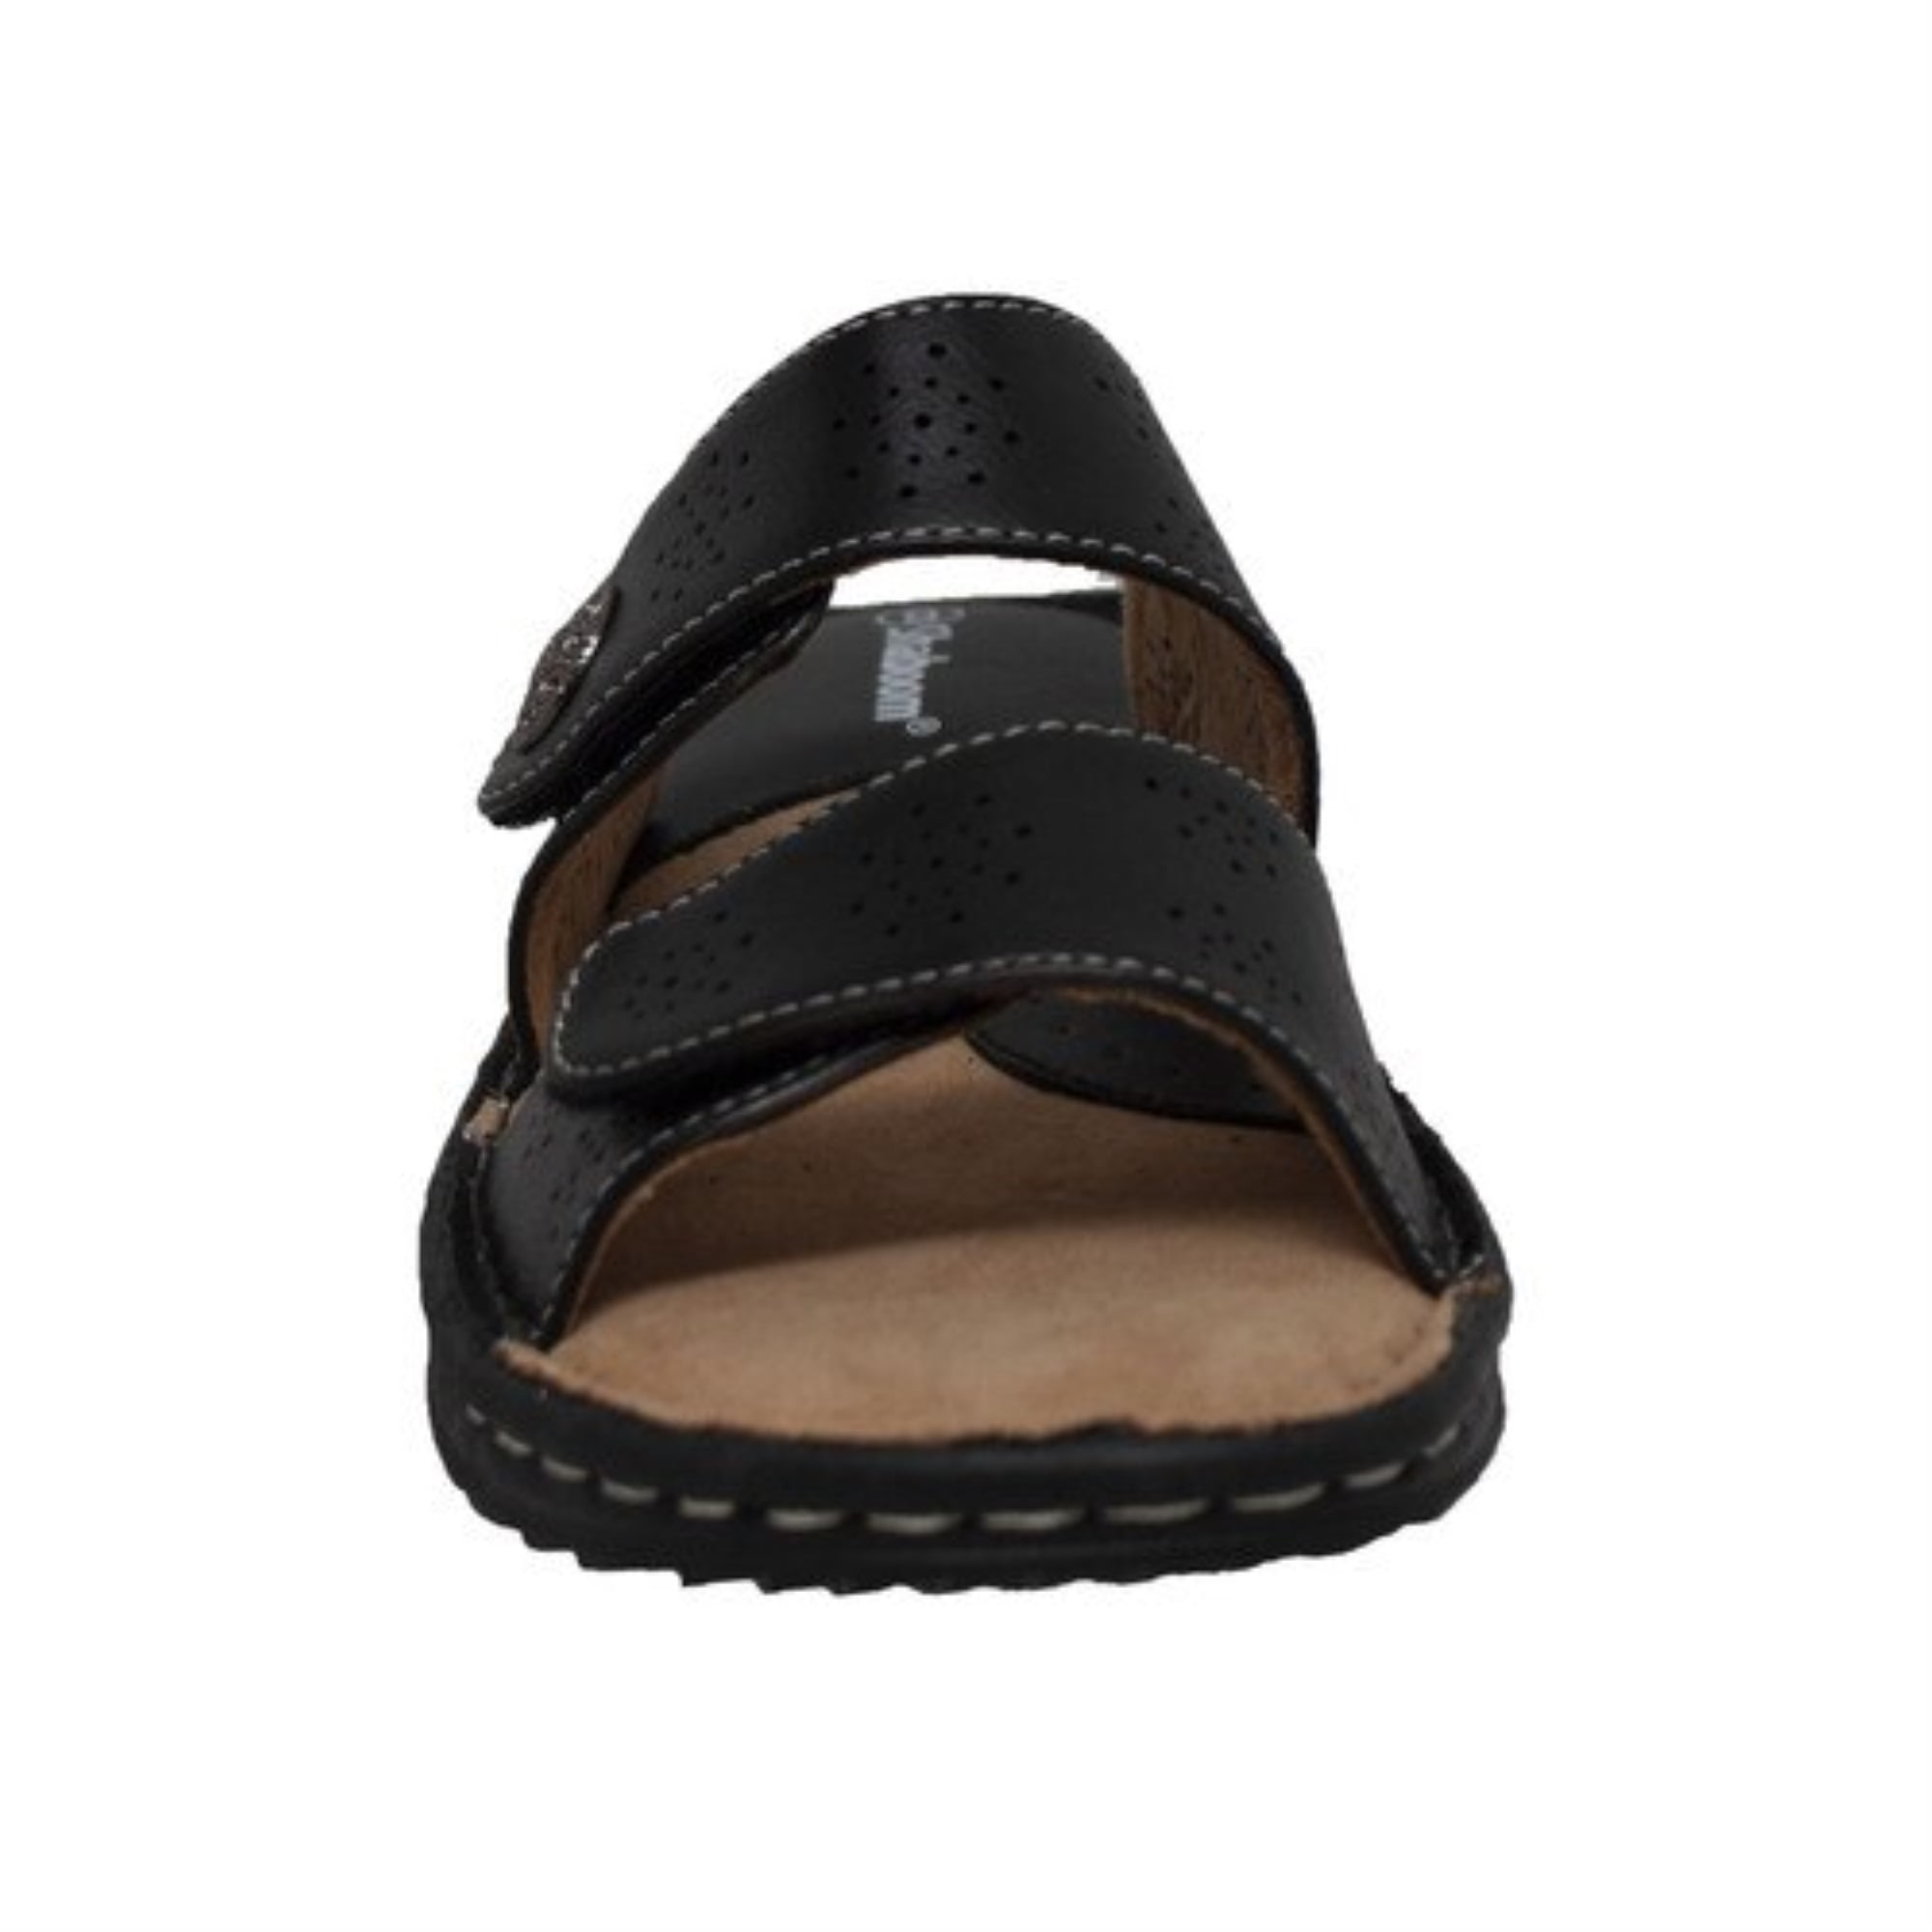 Women's Comfort Slide Sandals Black - Walmart.com